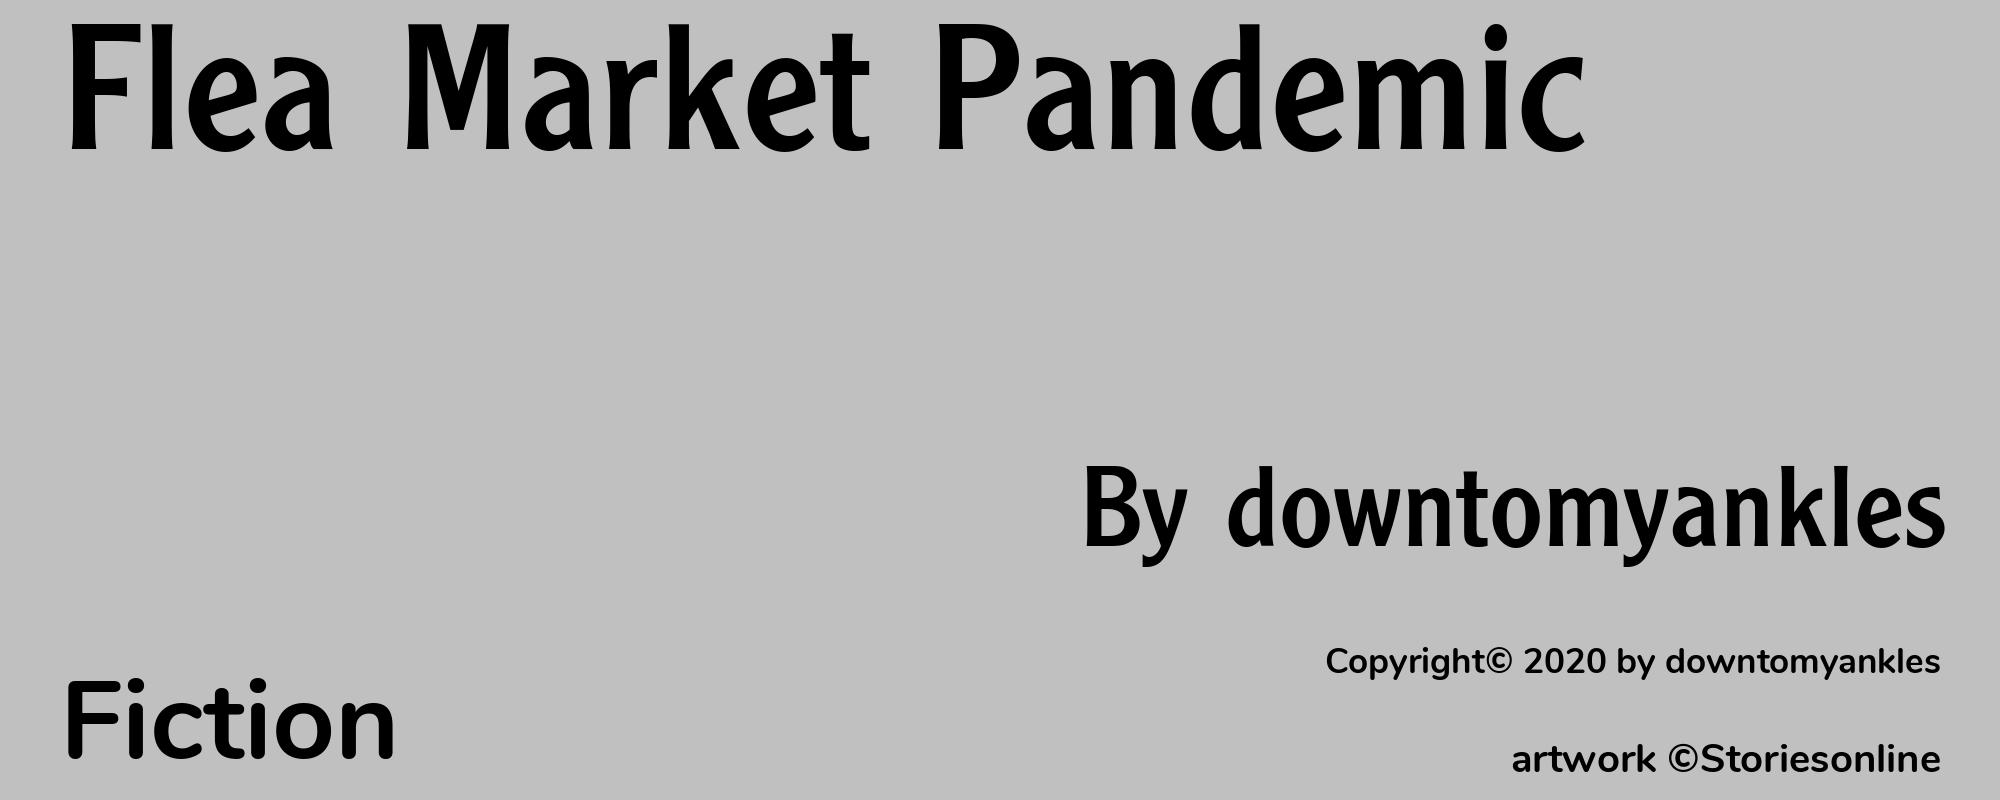 Flea Market Pandemic - Cover